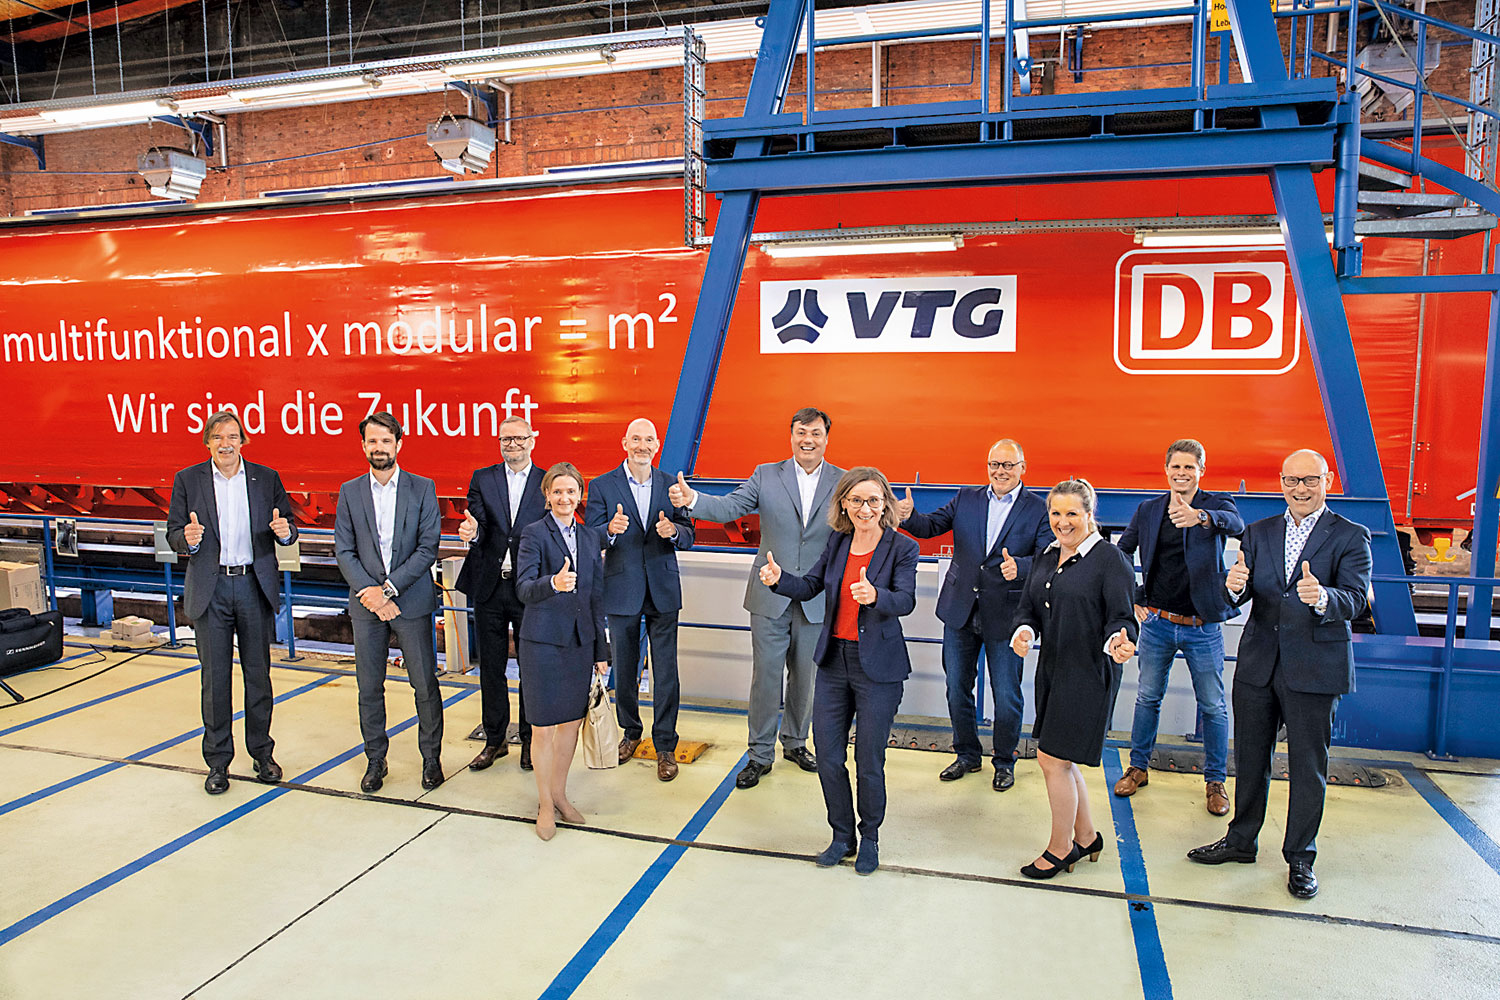 Mit den multifunktionalen Güterwagen wollen DB und VTG mehr Verkehr auf die Schiene holen.